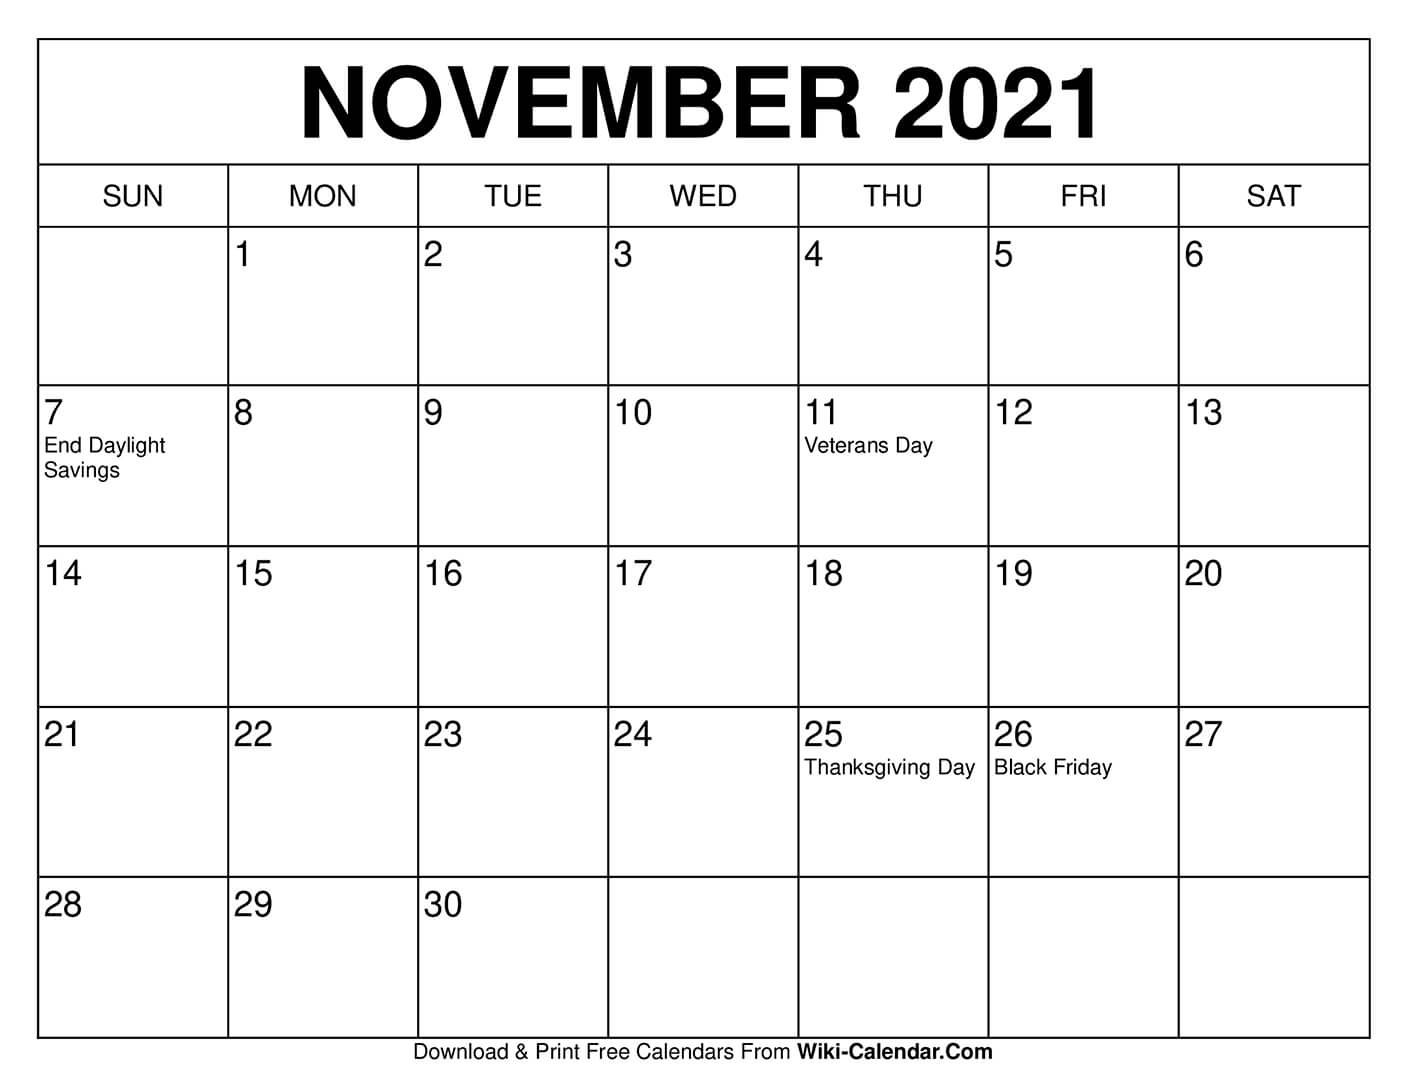 Get 2021 Calender November